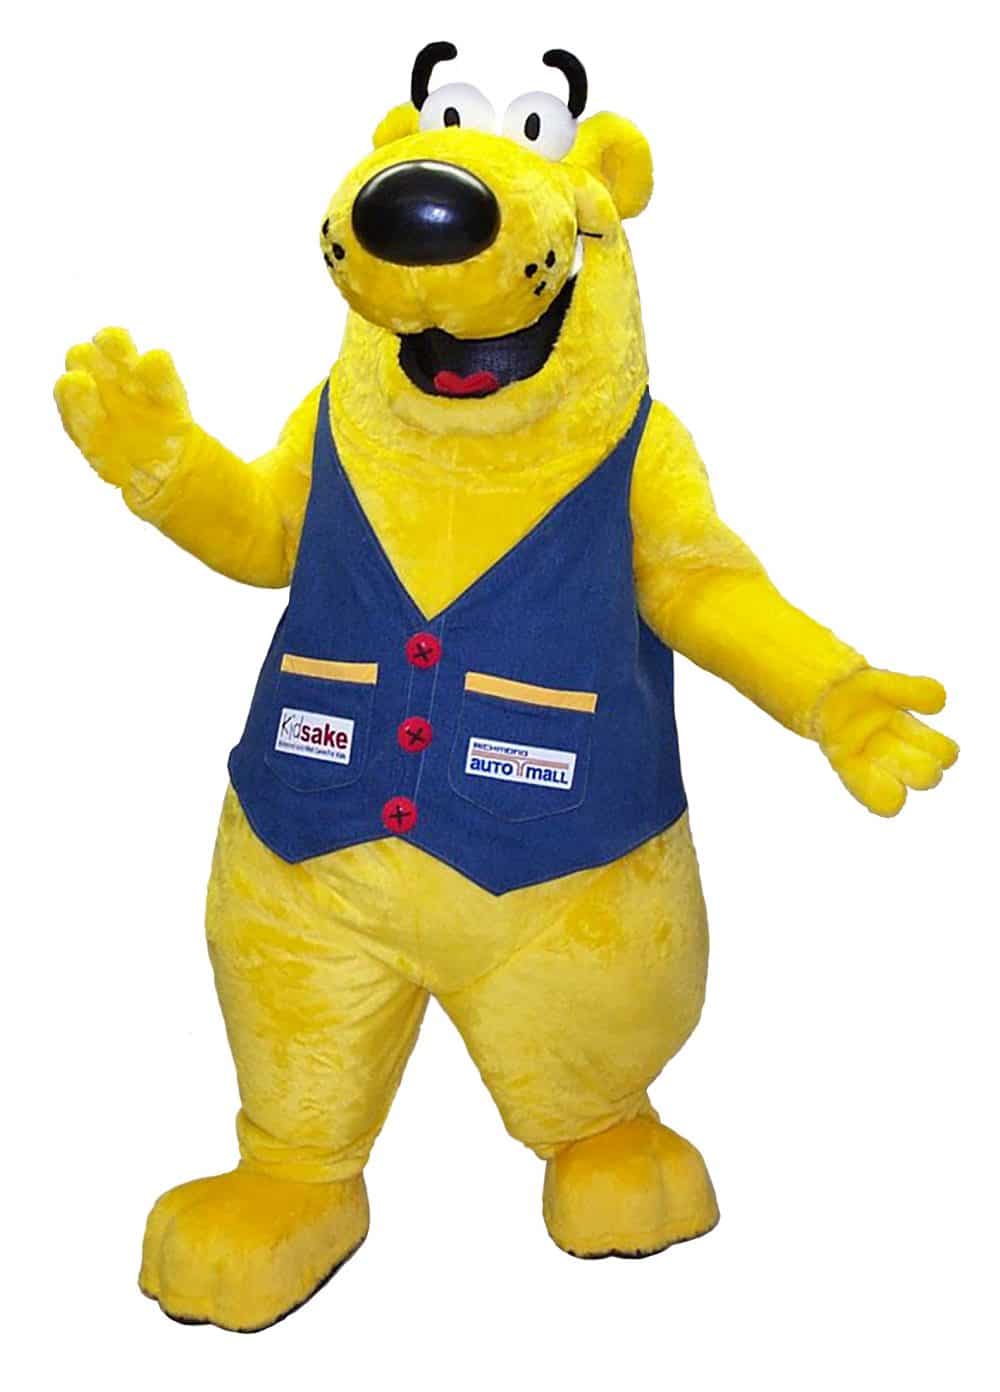 Bear Mascot - International Mascot Corporation